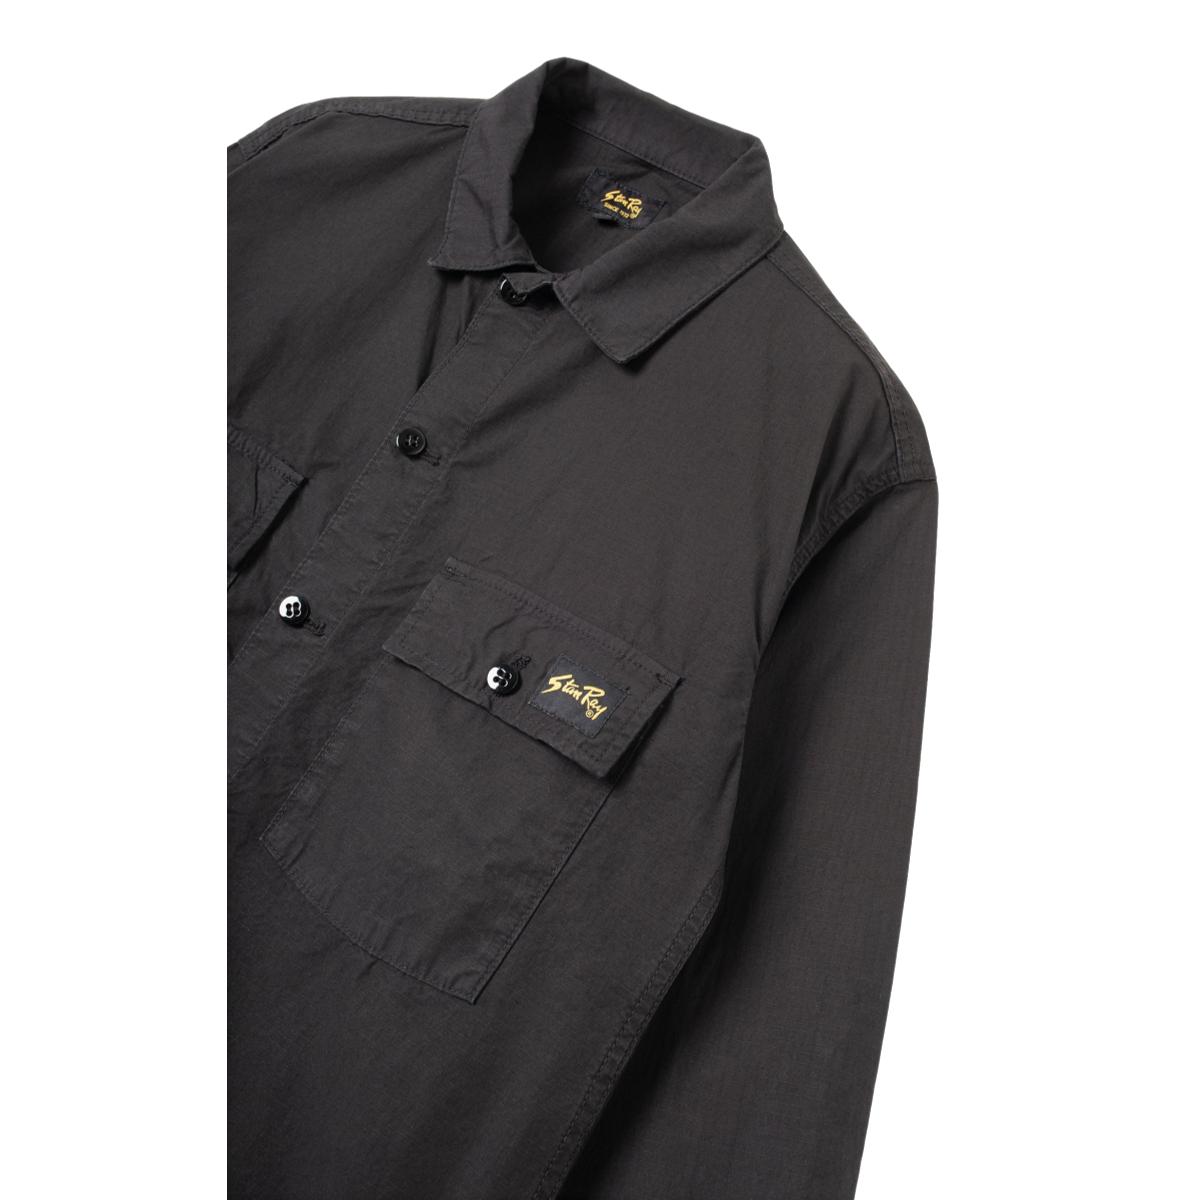 CPO Shirt Black Ripstop - Shirt Jacket